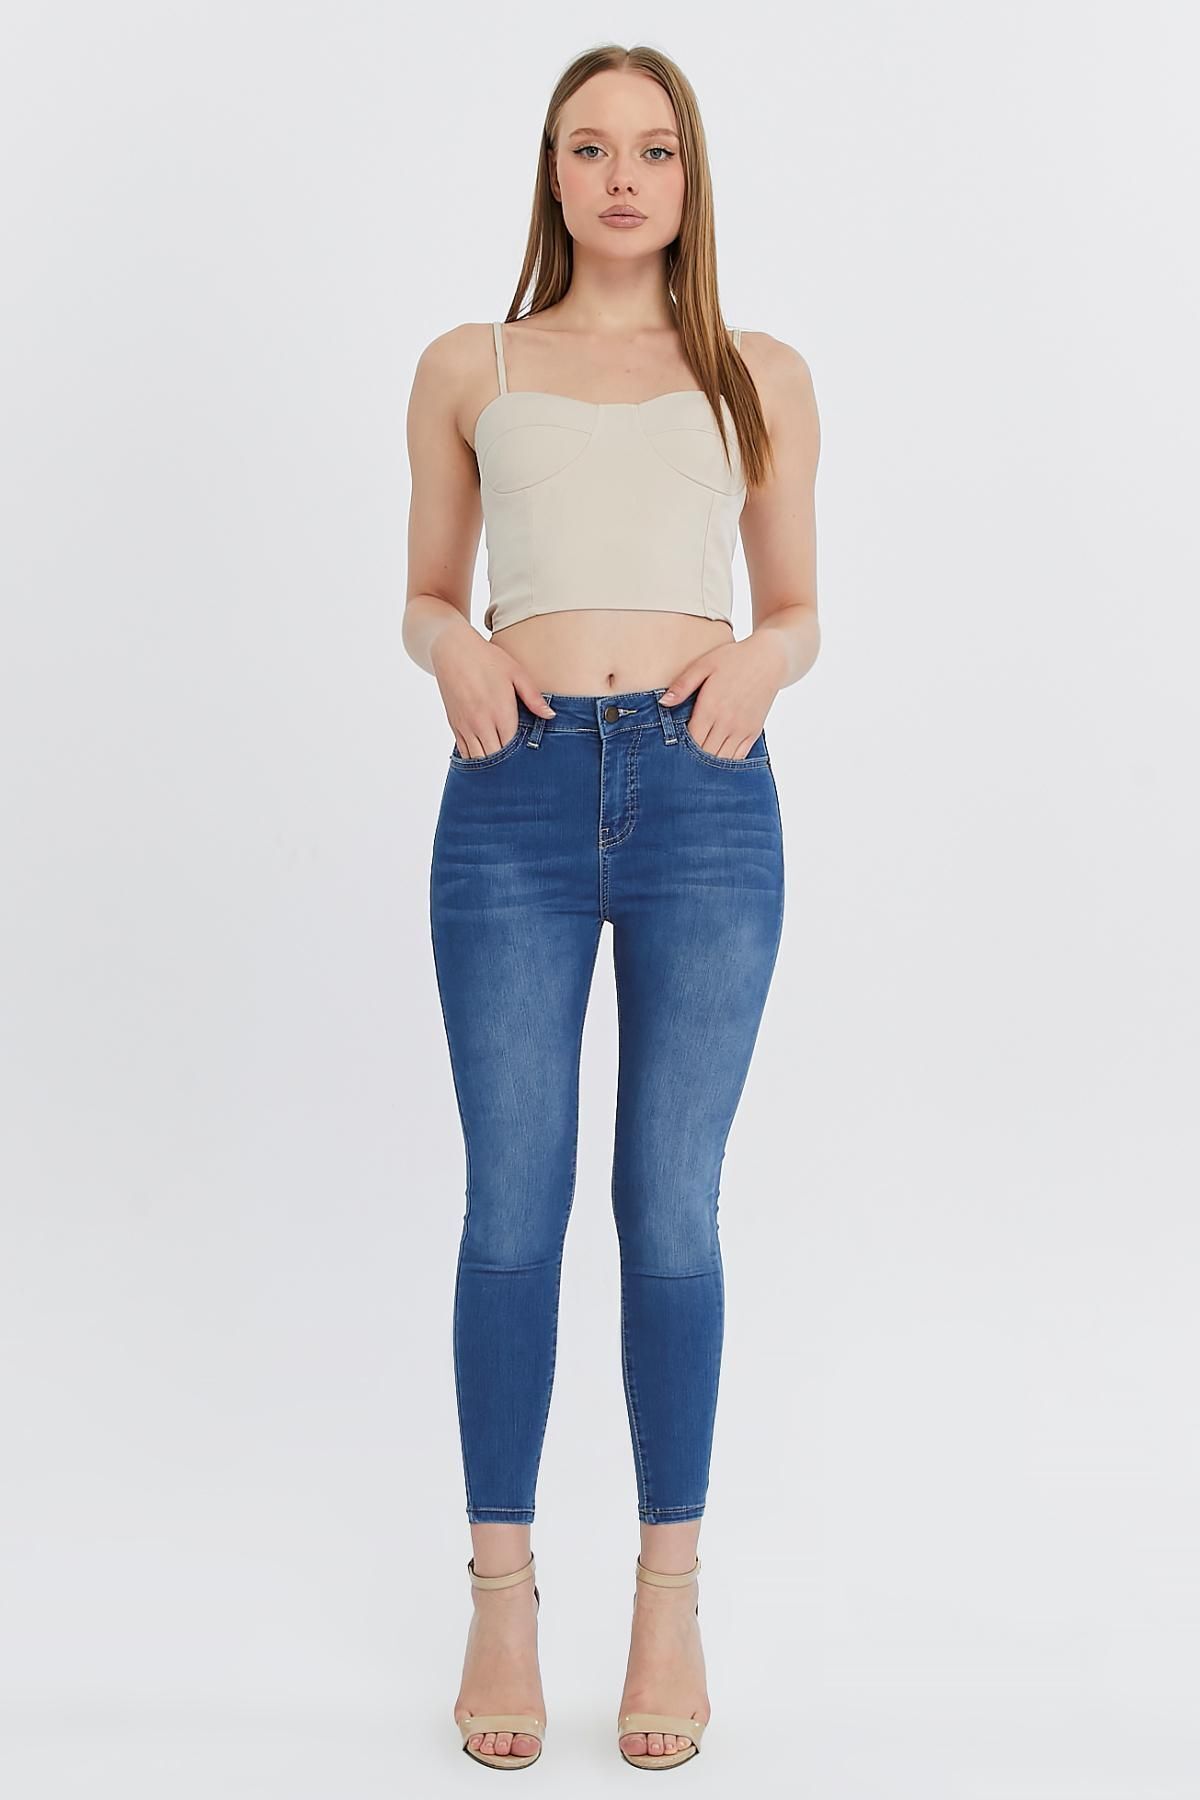 CEDY DENIM Slim Fit Jean Yüksek Bel Dar Kesim Esnek Açık Mavi Kadın Kot Pantolon C596